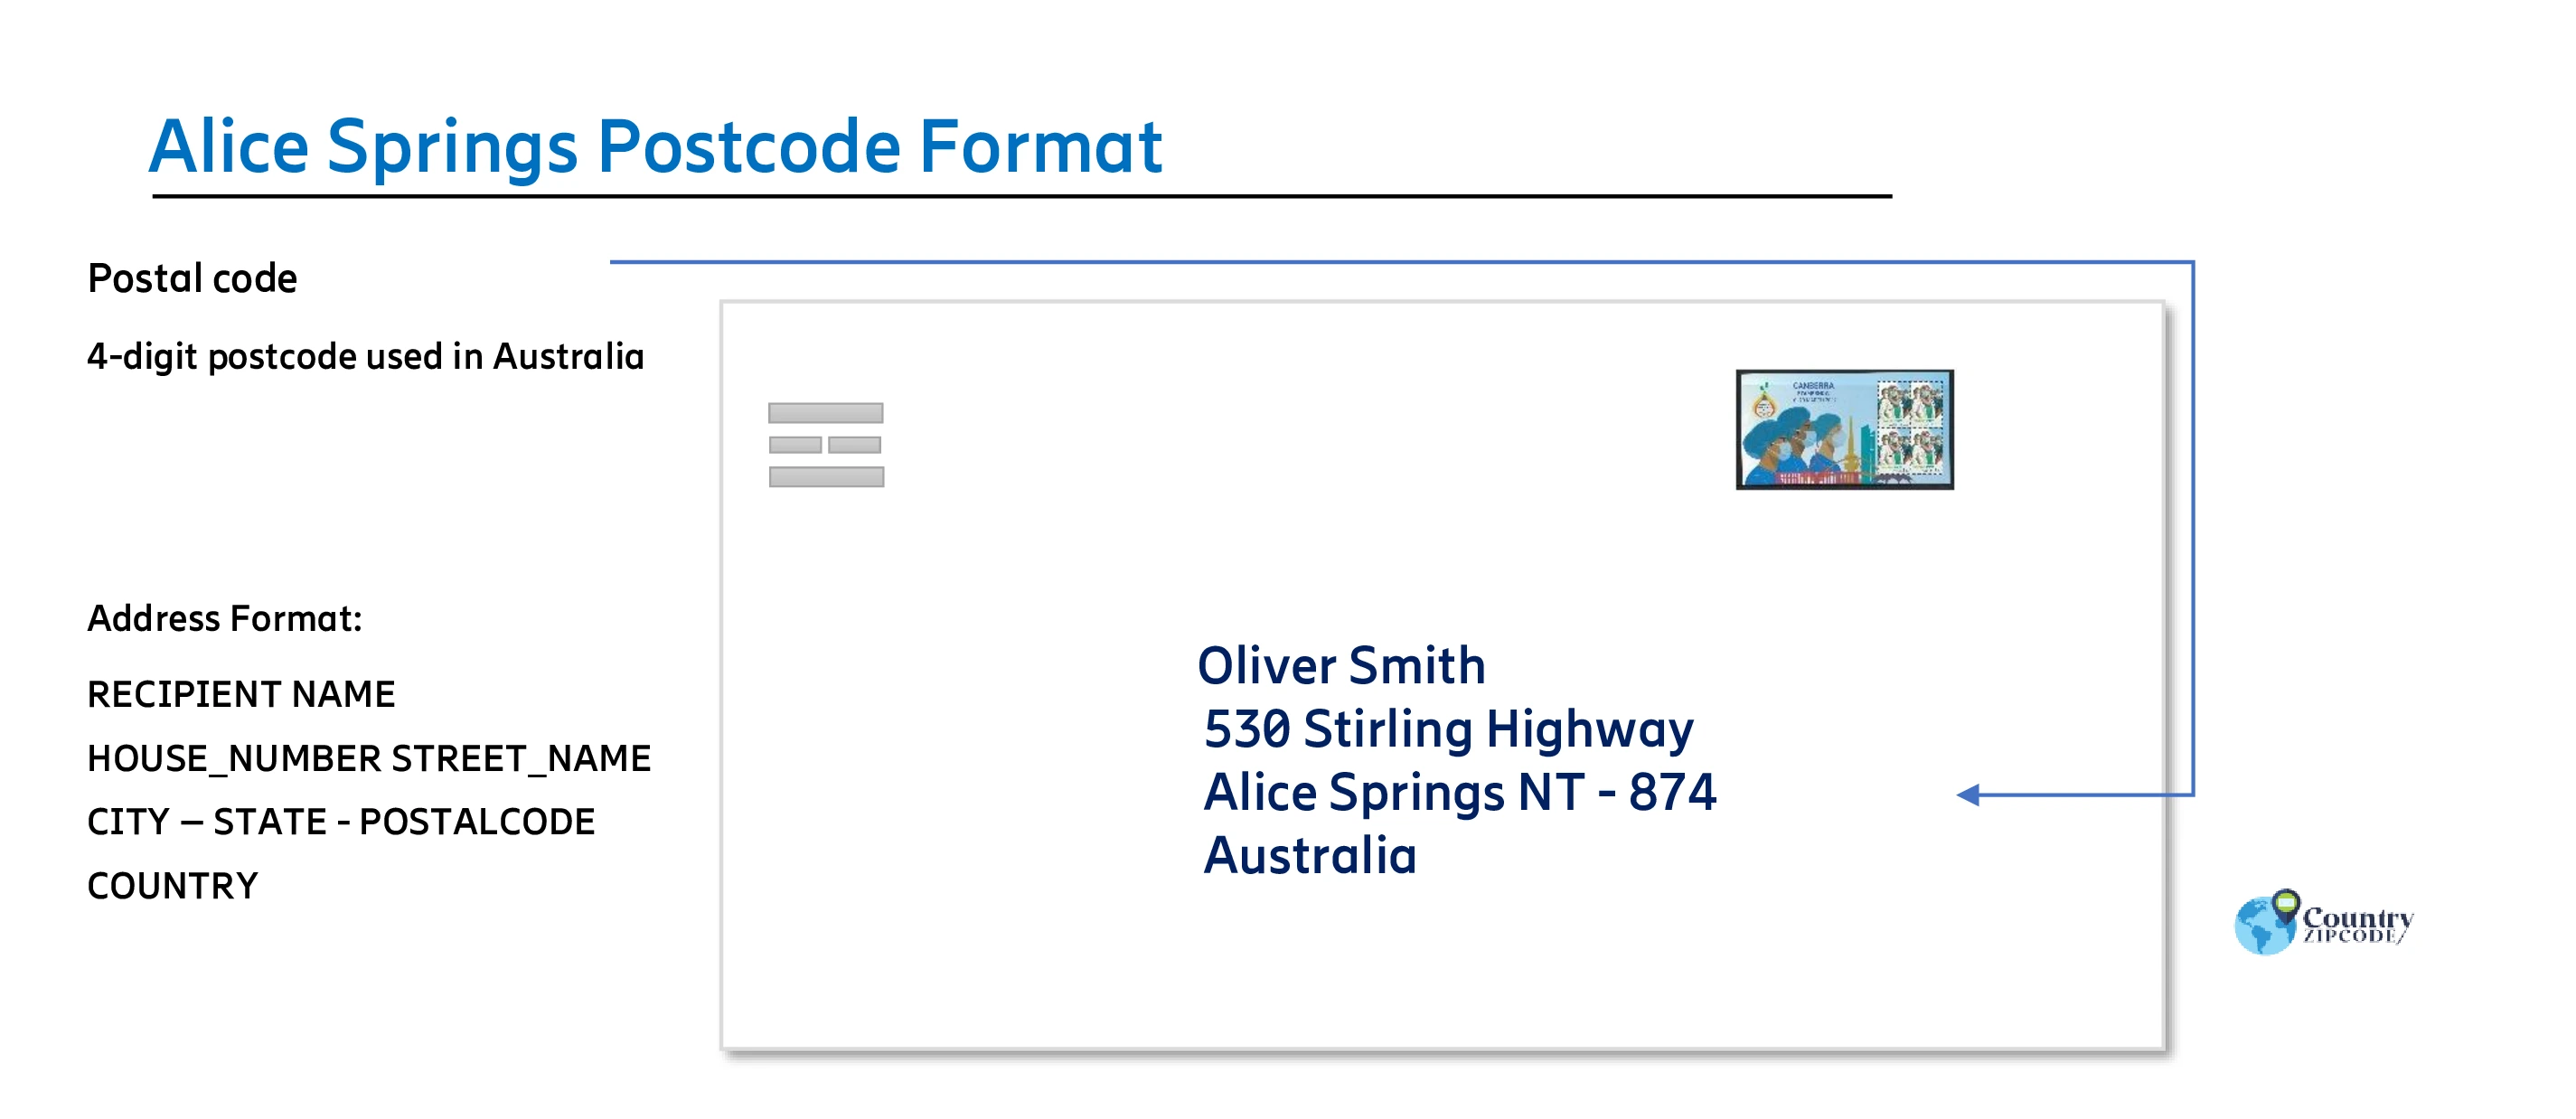 Alice Springs Australia Postal code format